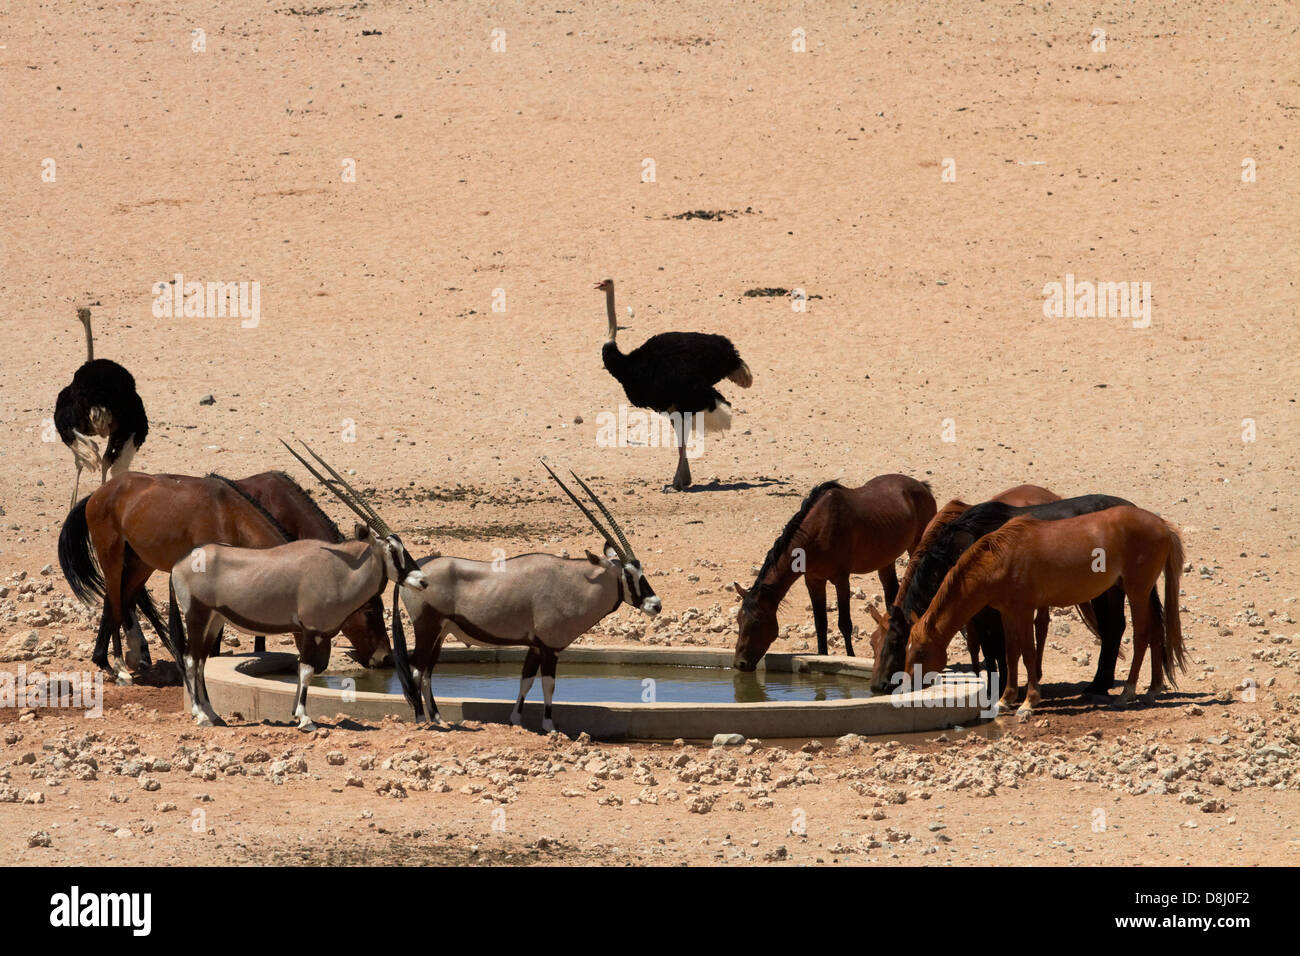 Les chevaux sauvages, gemsbok (Oryx), et des autruches, Garub waterhole, Namib-Naukluft National Park, près de l'Aus, le sud de la Namibie, l'Afrique Banque D'Images